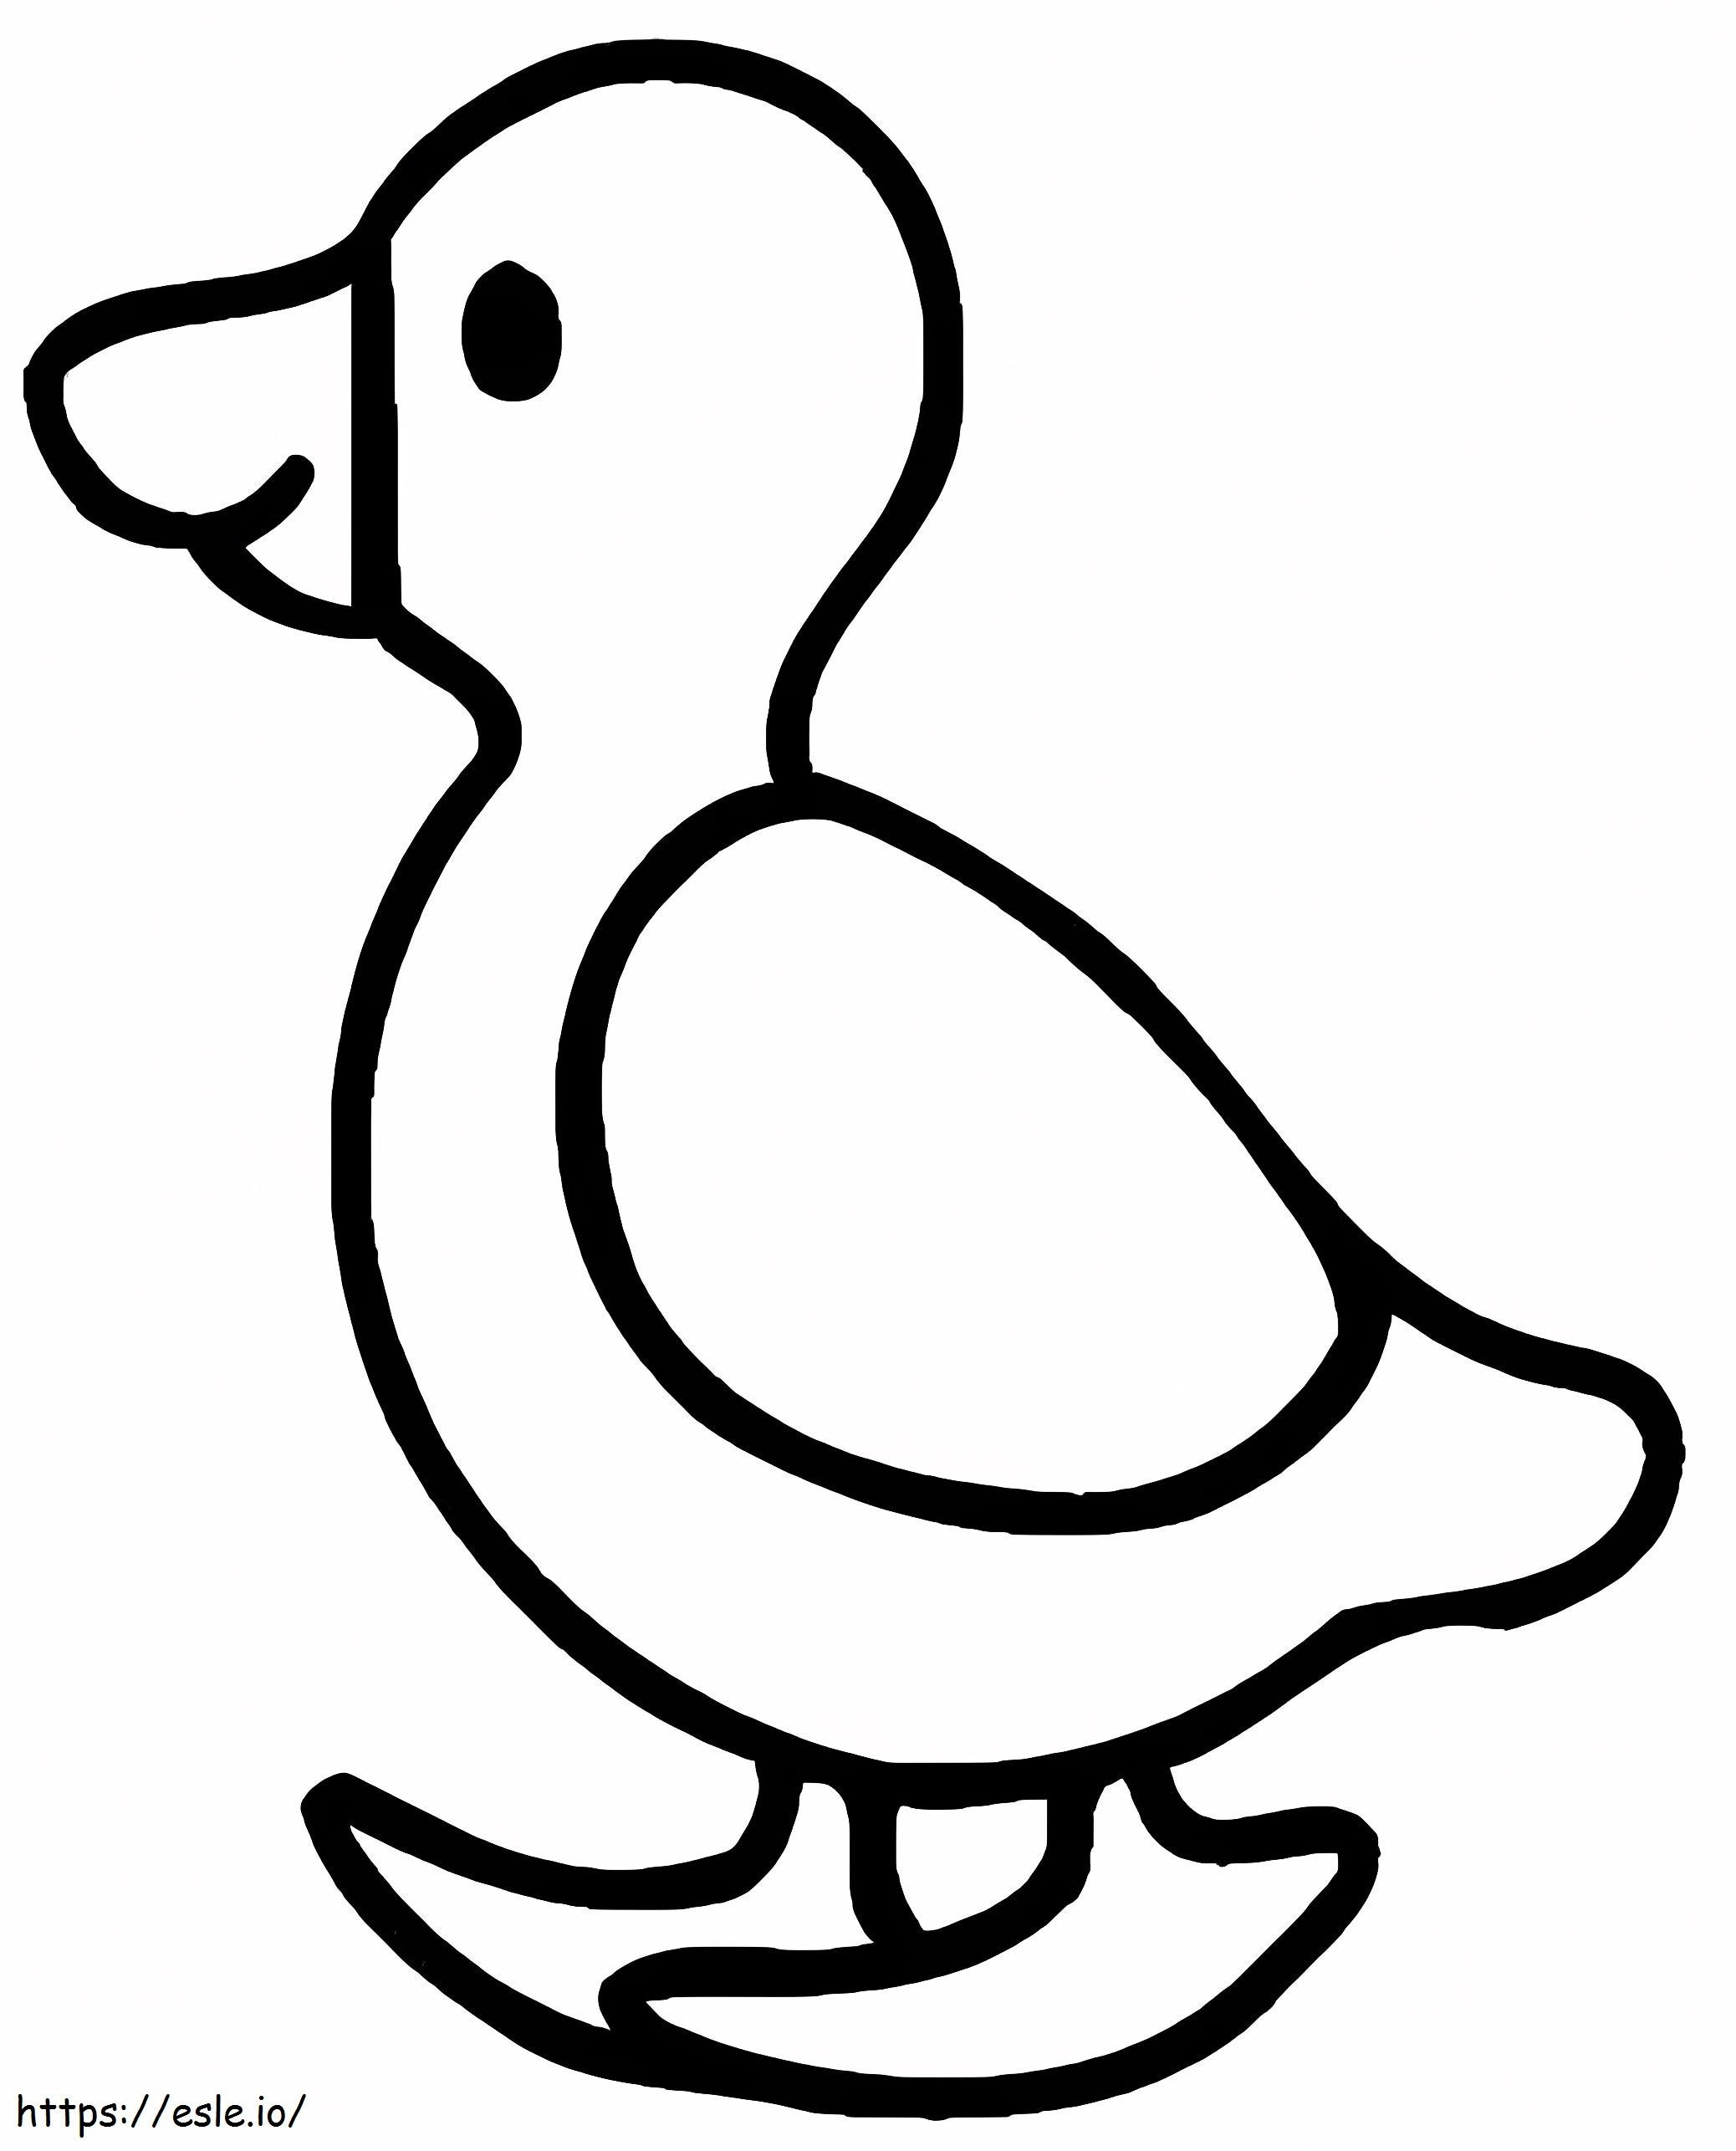 Coloriage Petit canard pour les enfants de 1 an à imprimer dessin